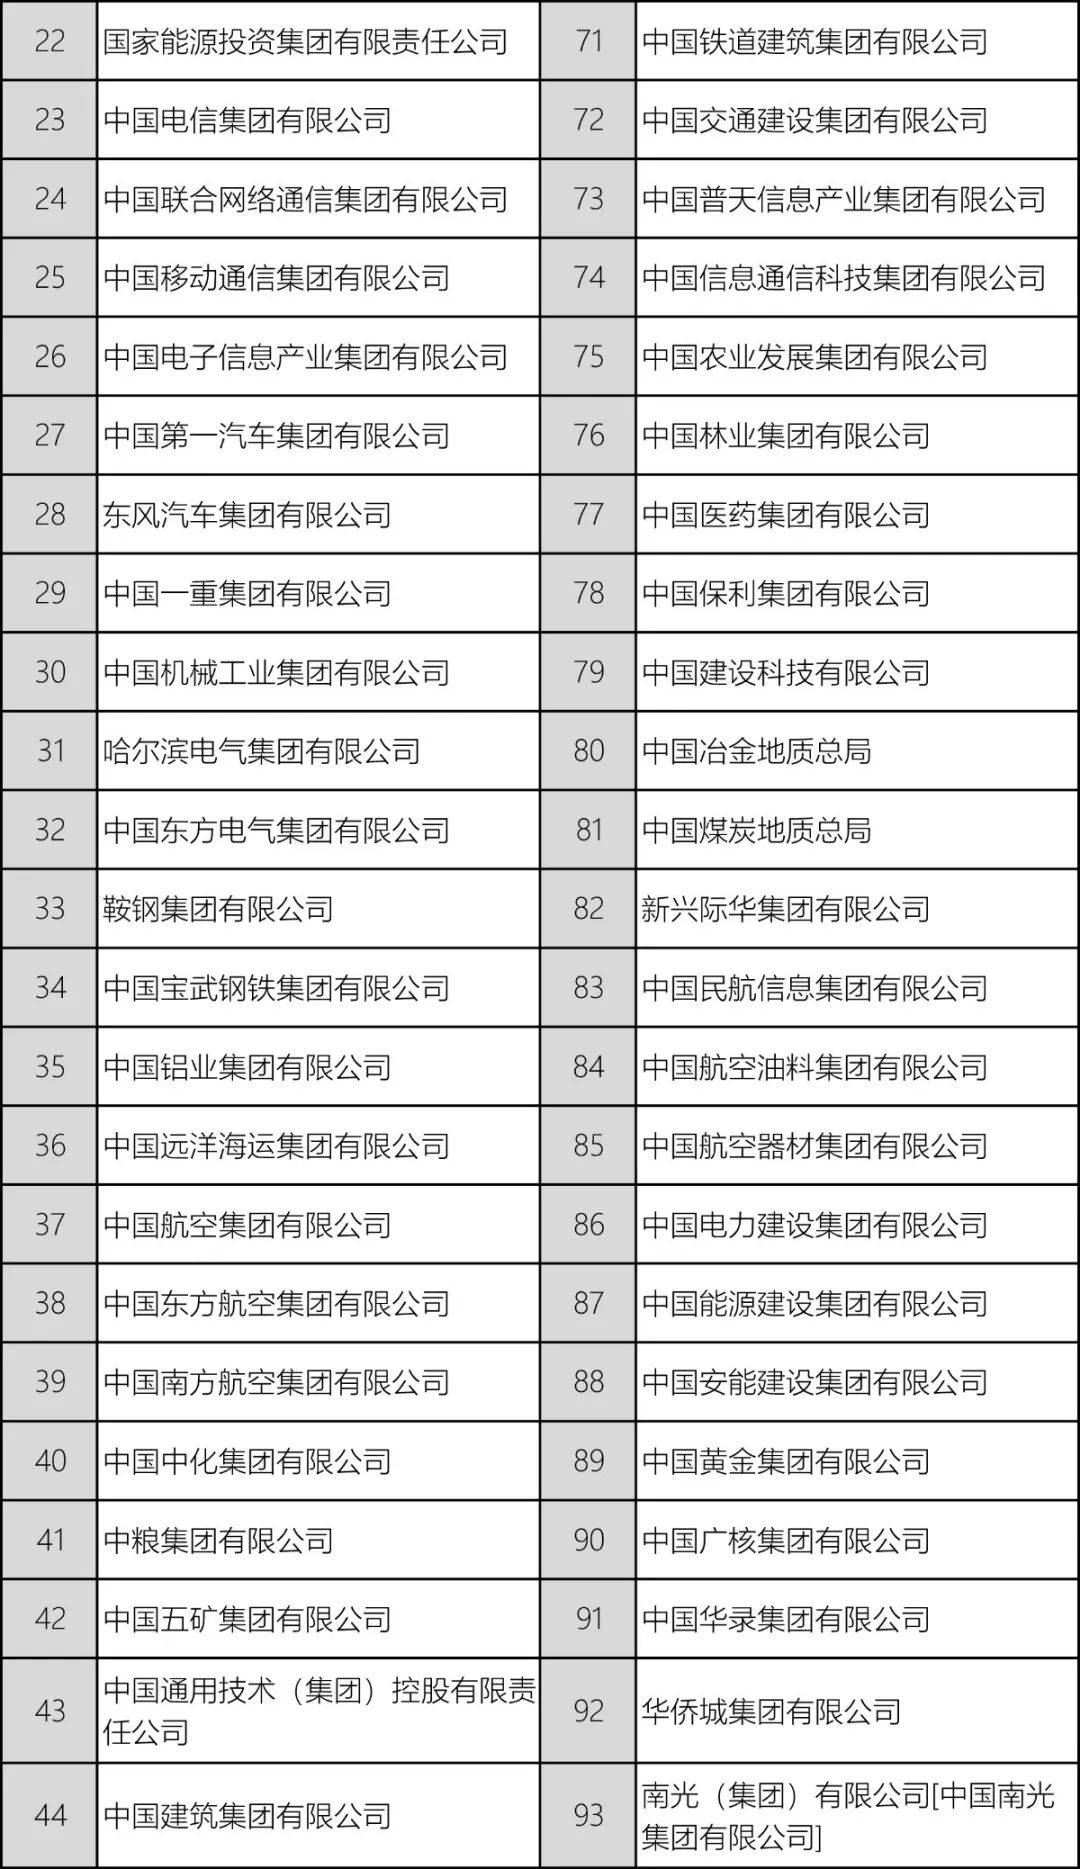 央企名单排名2020_2020最新央企名录及其行政级别划分